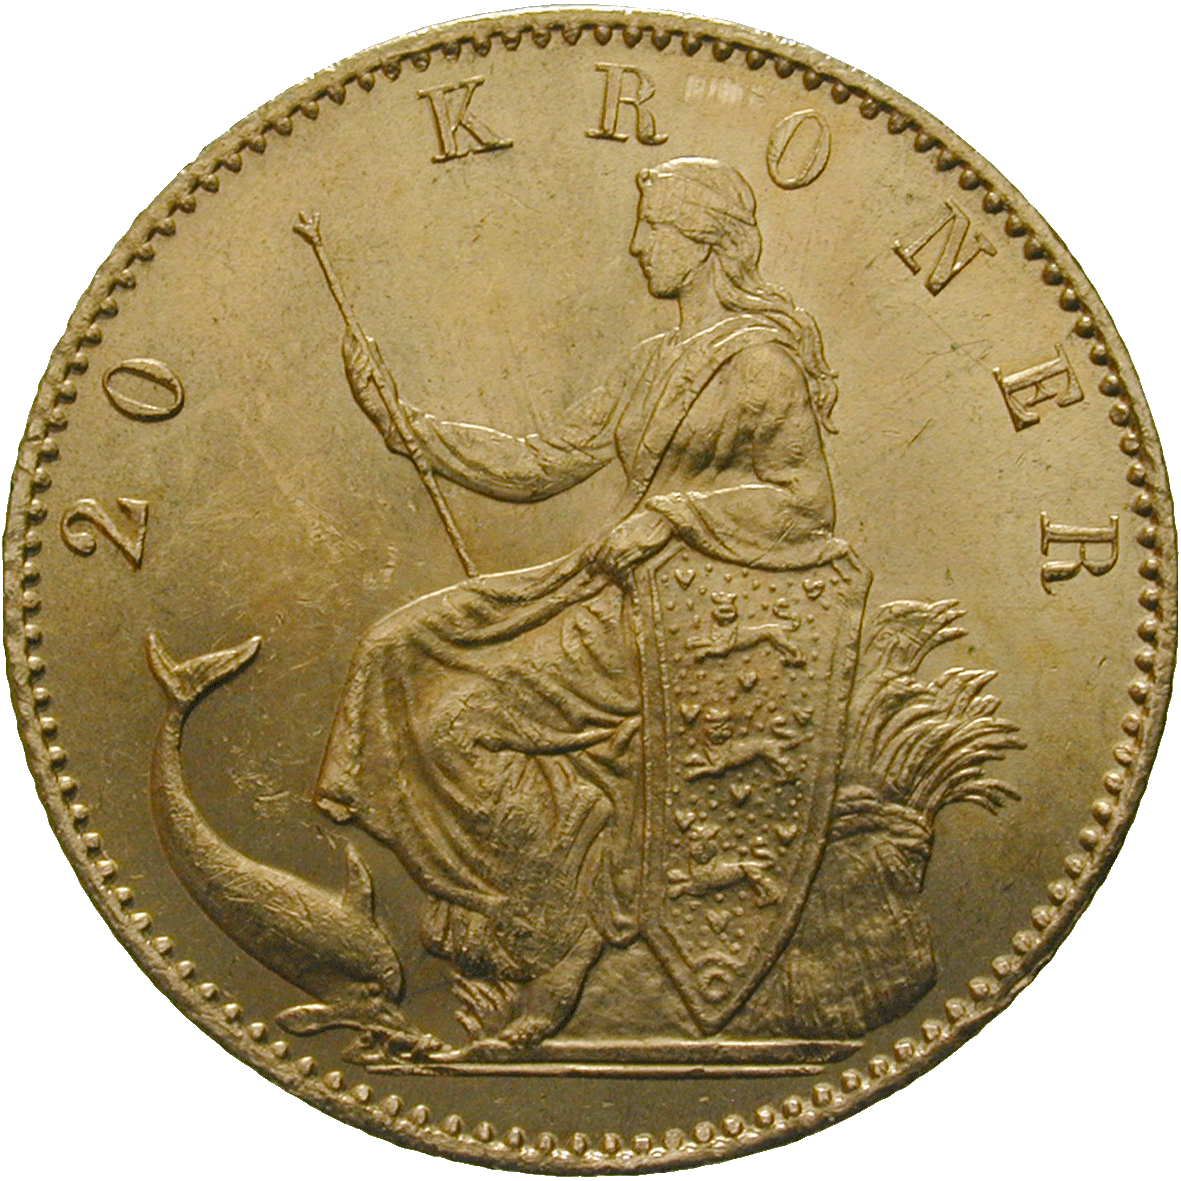 Kingdom of Denmark, Christian IX, 20 Kroner 1877 (reverse)